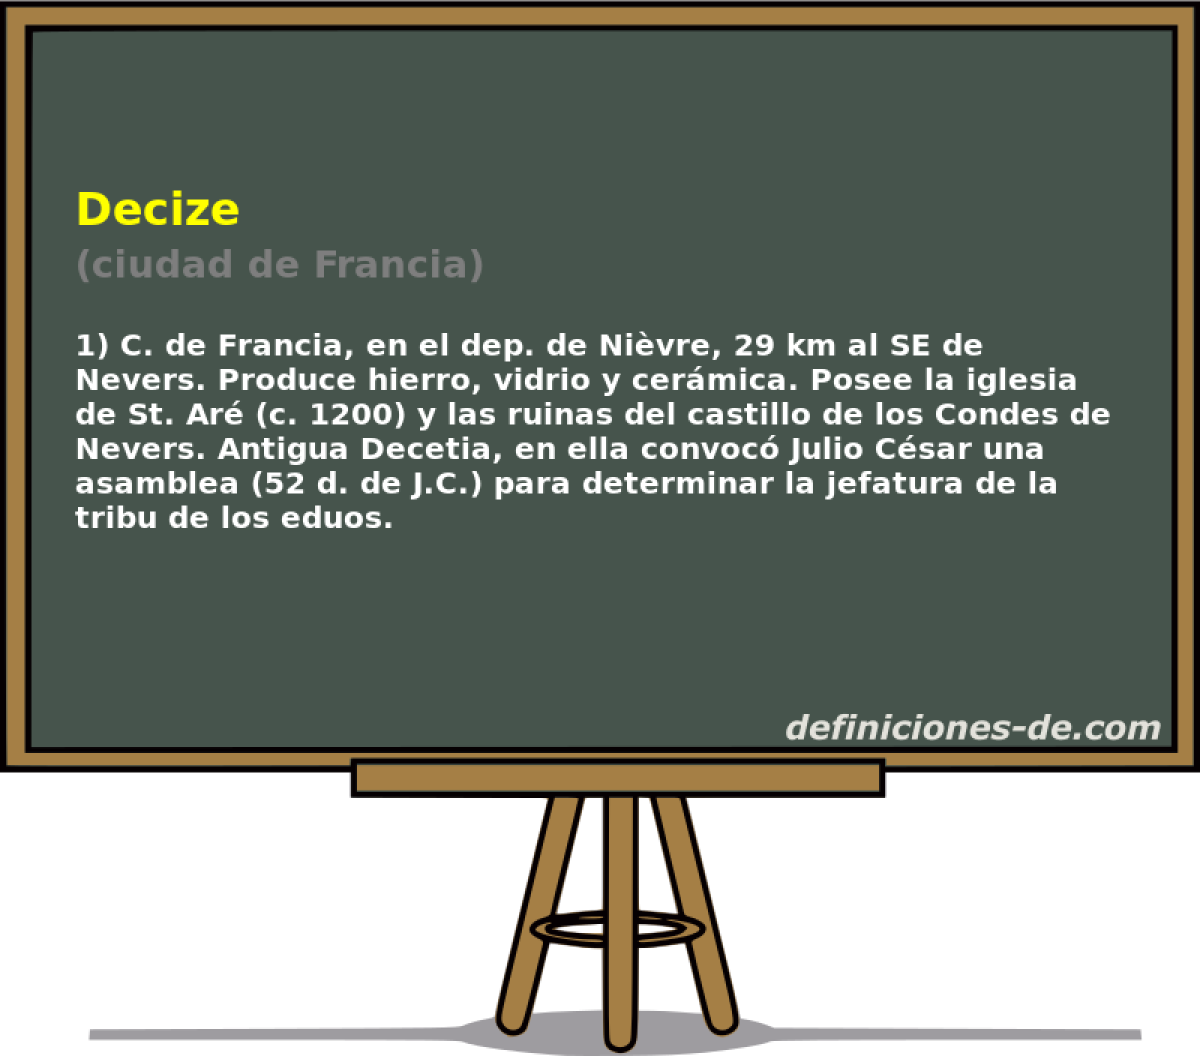 Decize (ciudad de Francia)